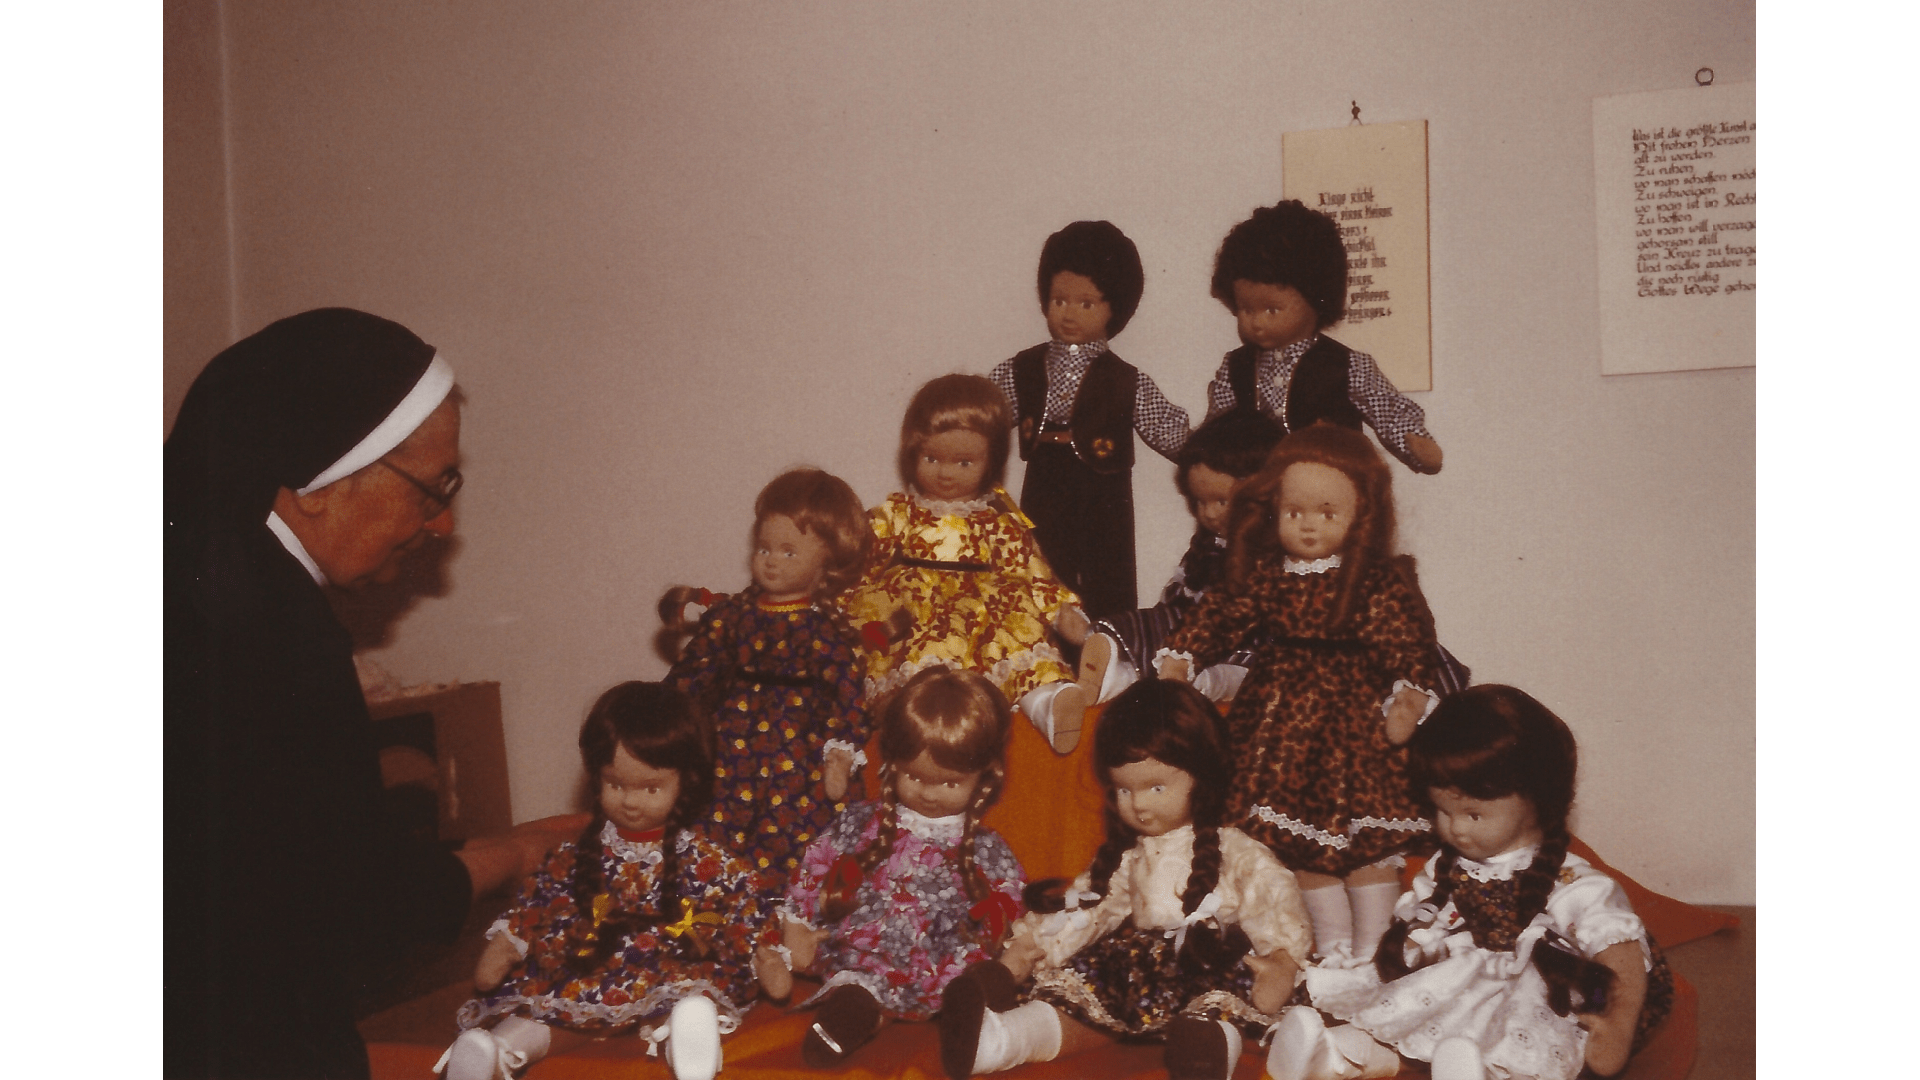 Puppenfamilie - an der Herstellung beteiligten sich auch die Mitschwestern. Foto: Archiv Arme Schulschwestern